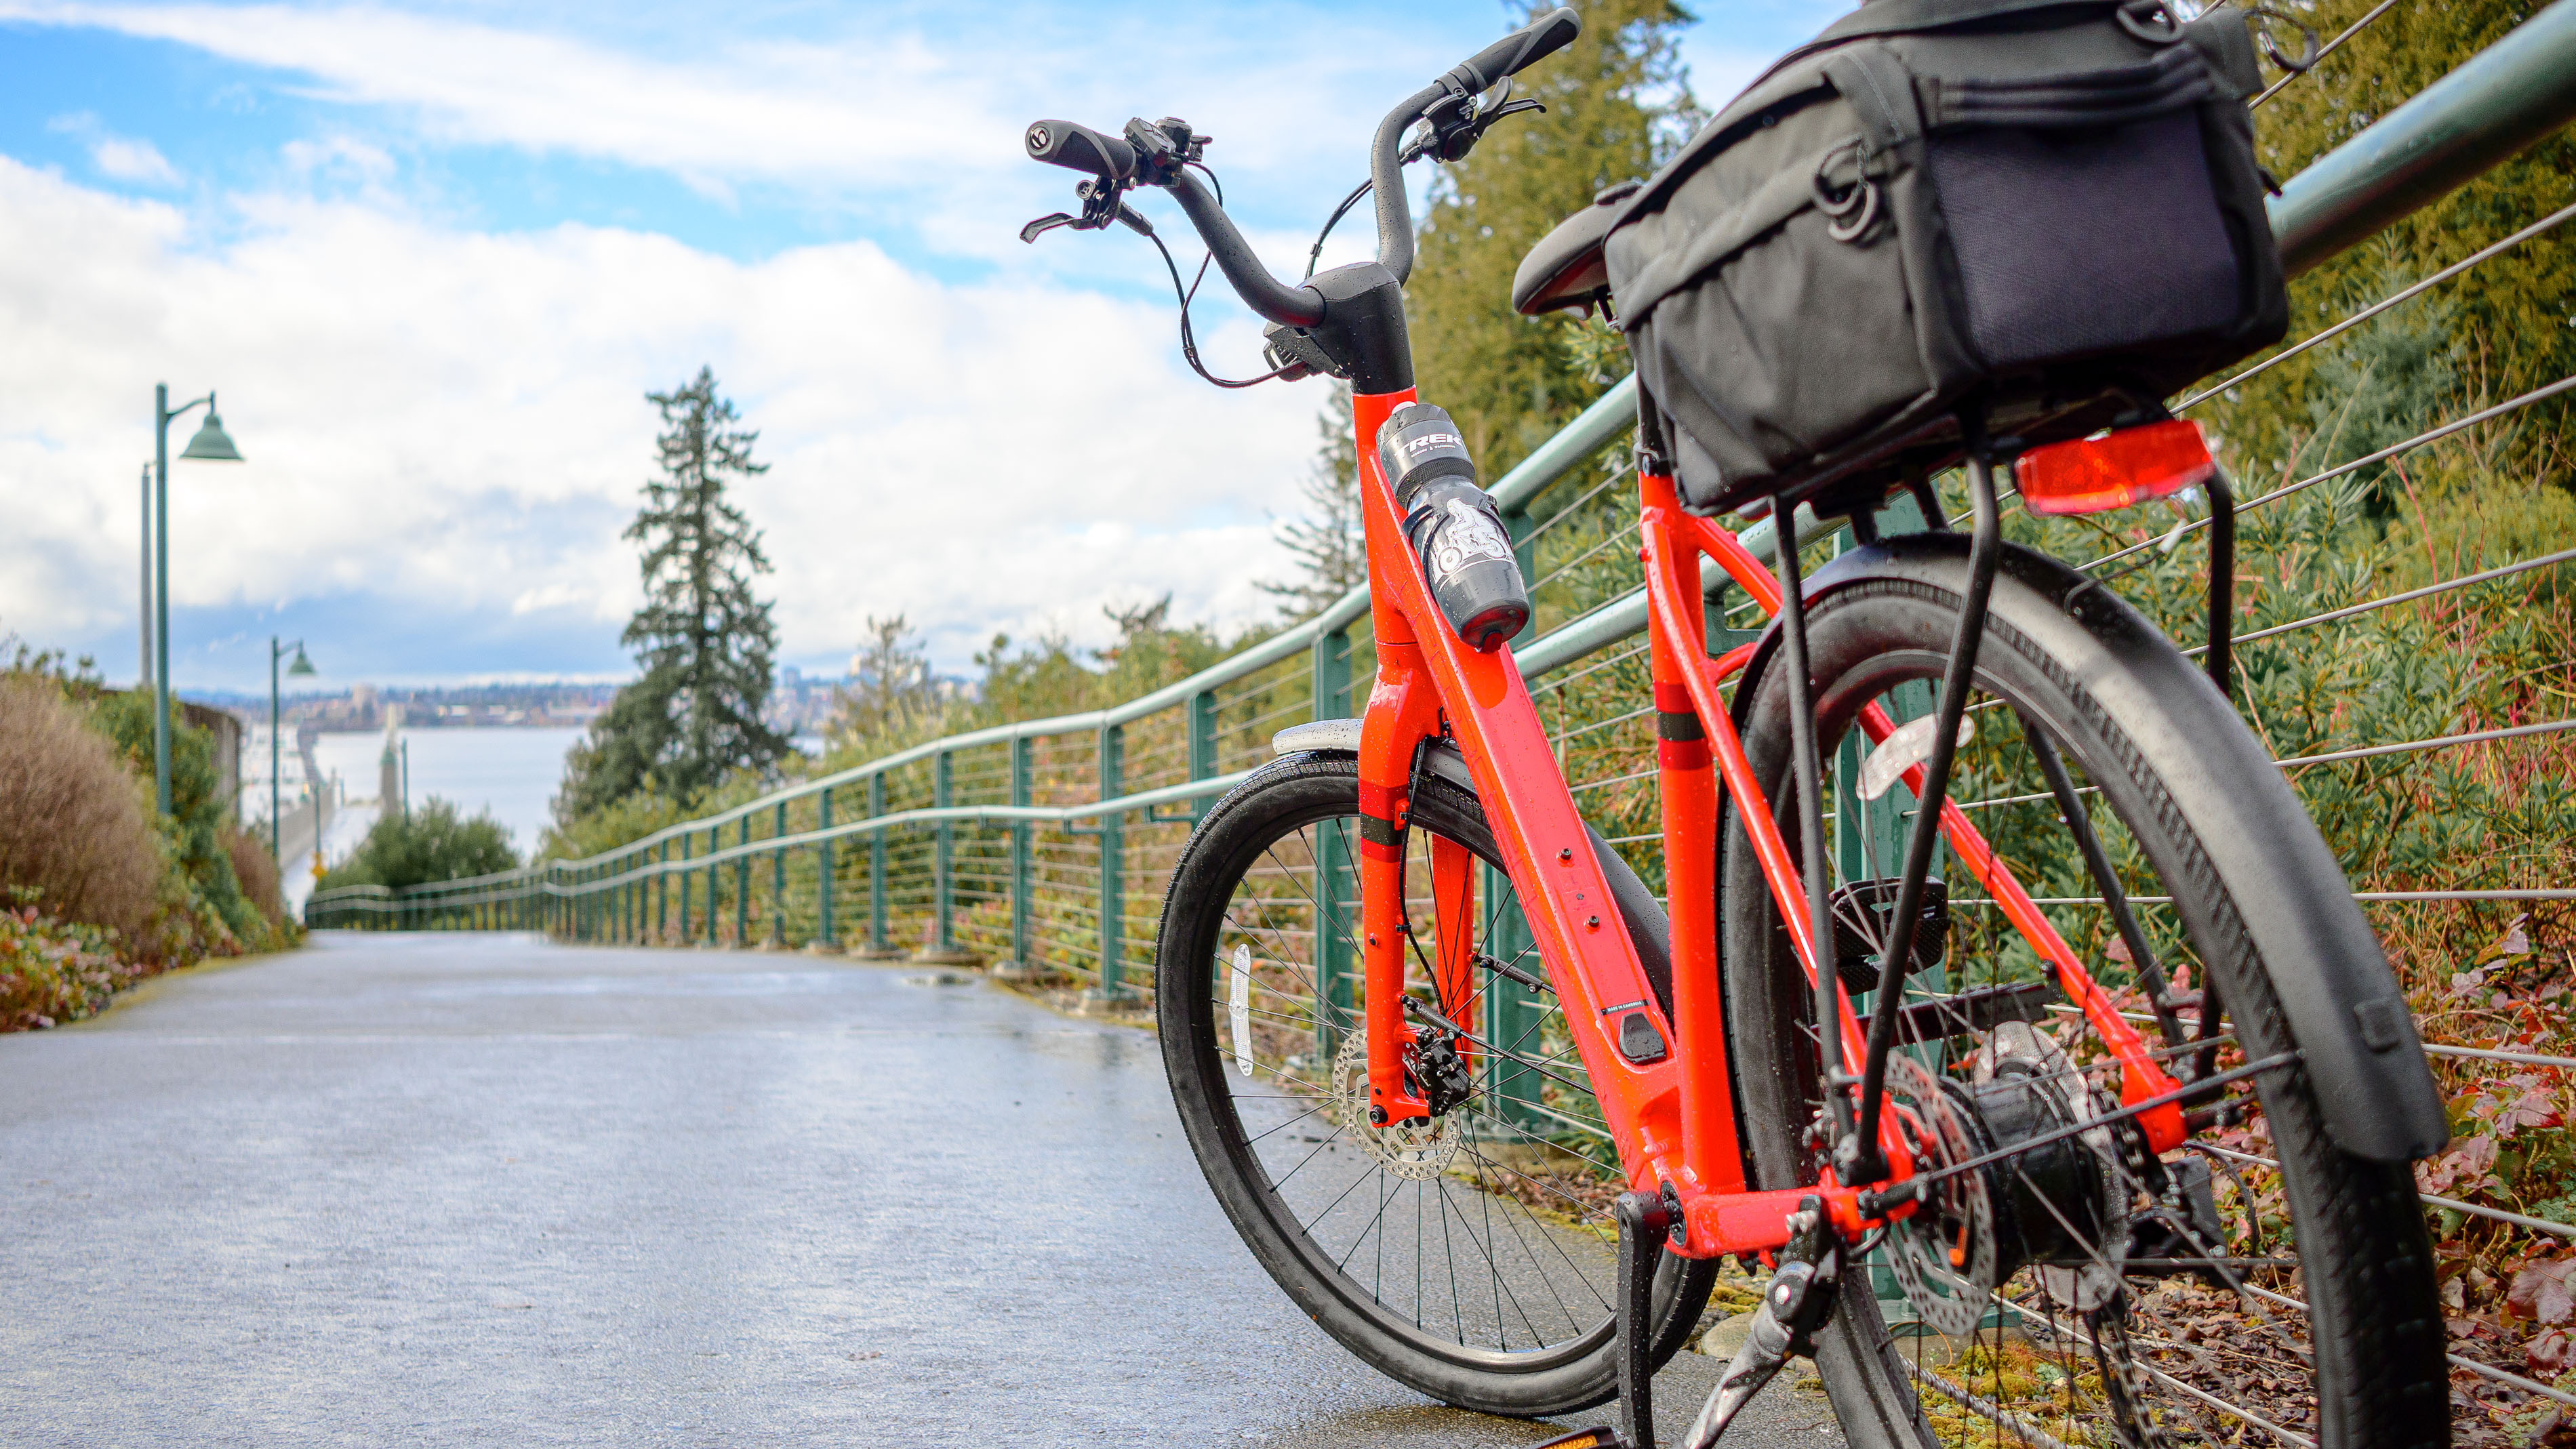 אופניים חשמליים מסוג Trek Verve+ 1 Lowstep LT אדום עם שמיים כחולים מאחוריו.